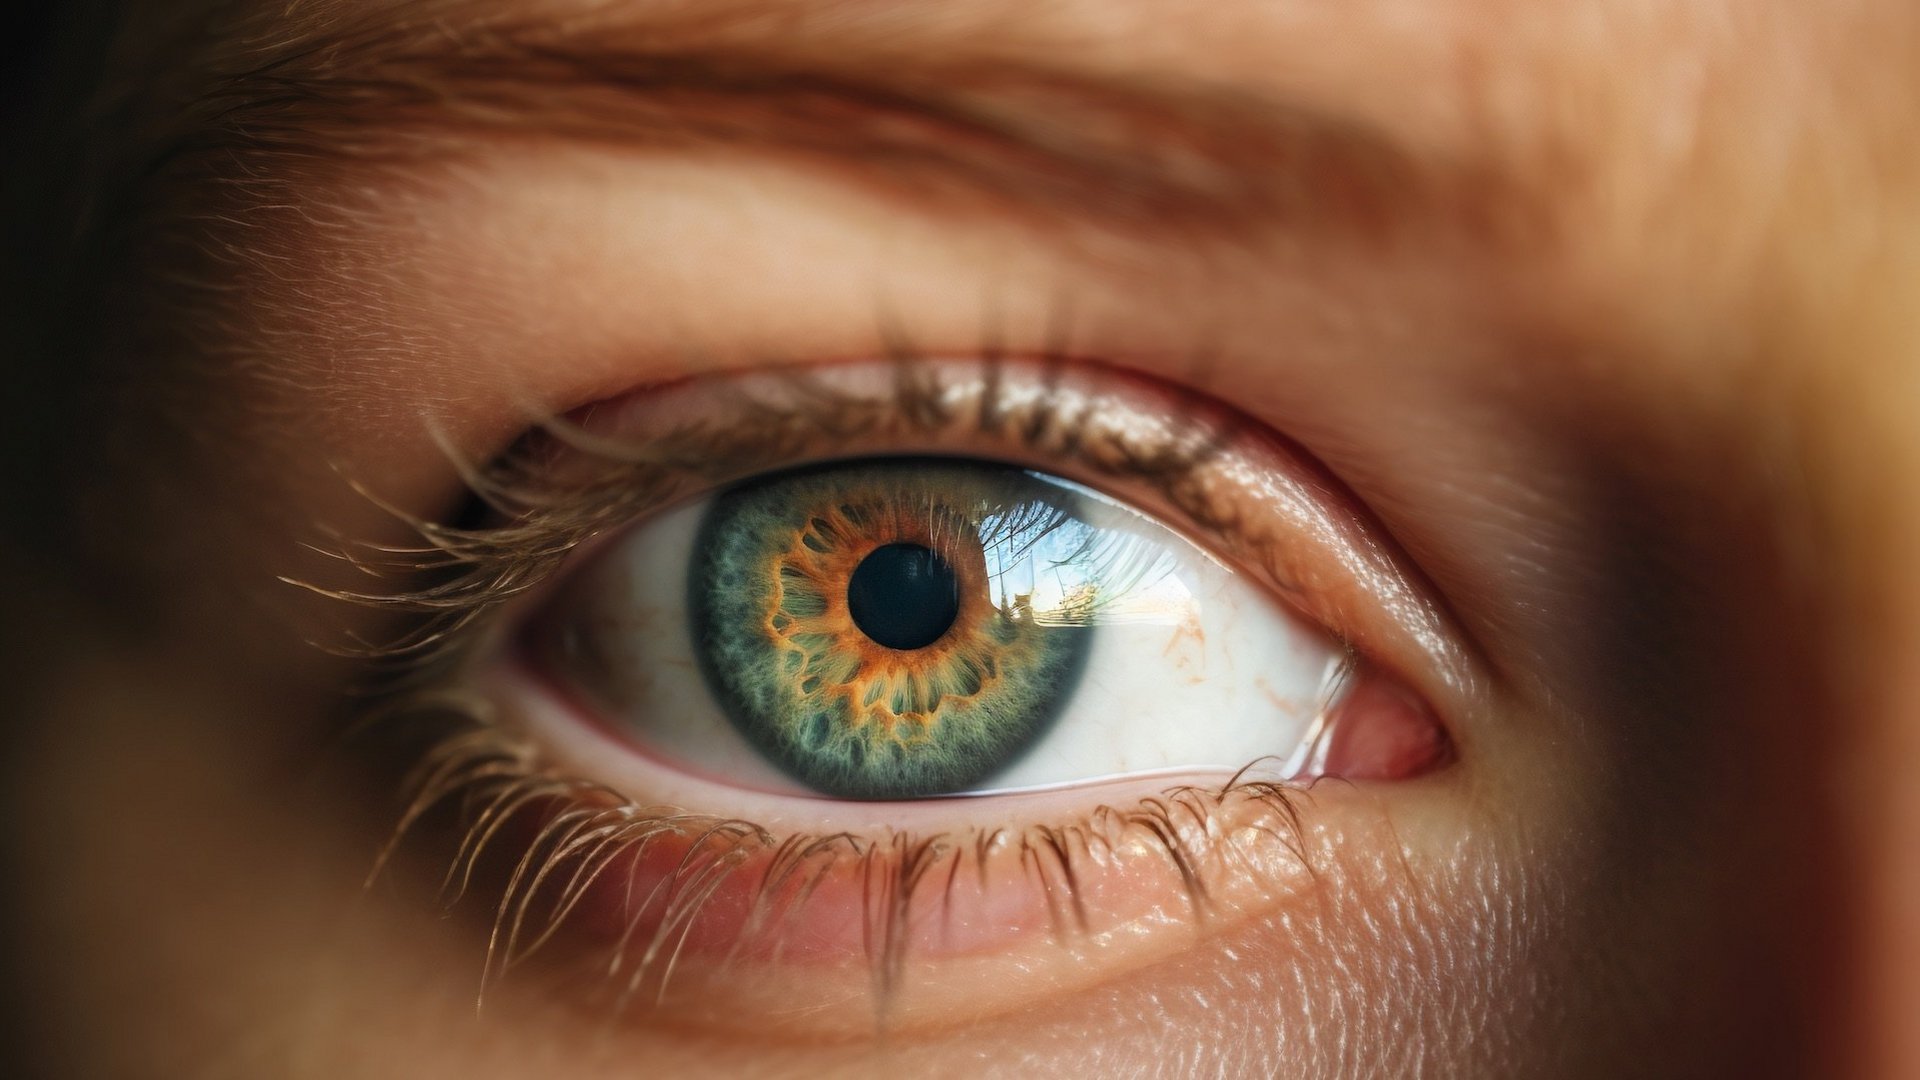 Das Bild zeigt ein Auge mit blau-gelb gemusterter Iris.